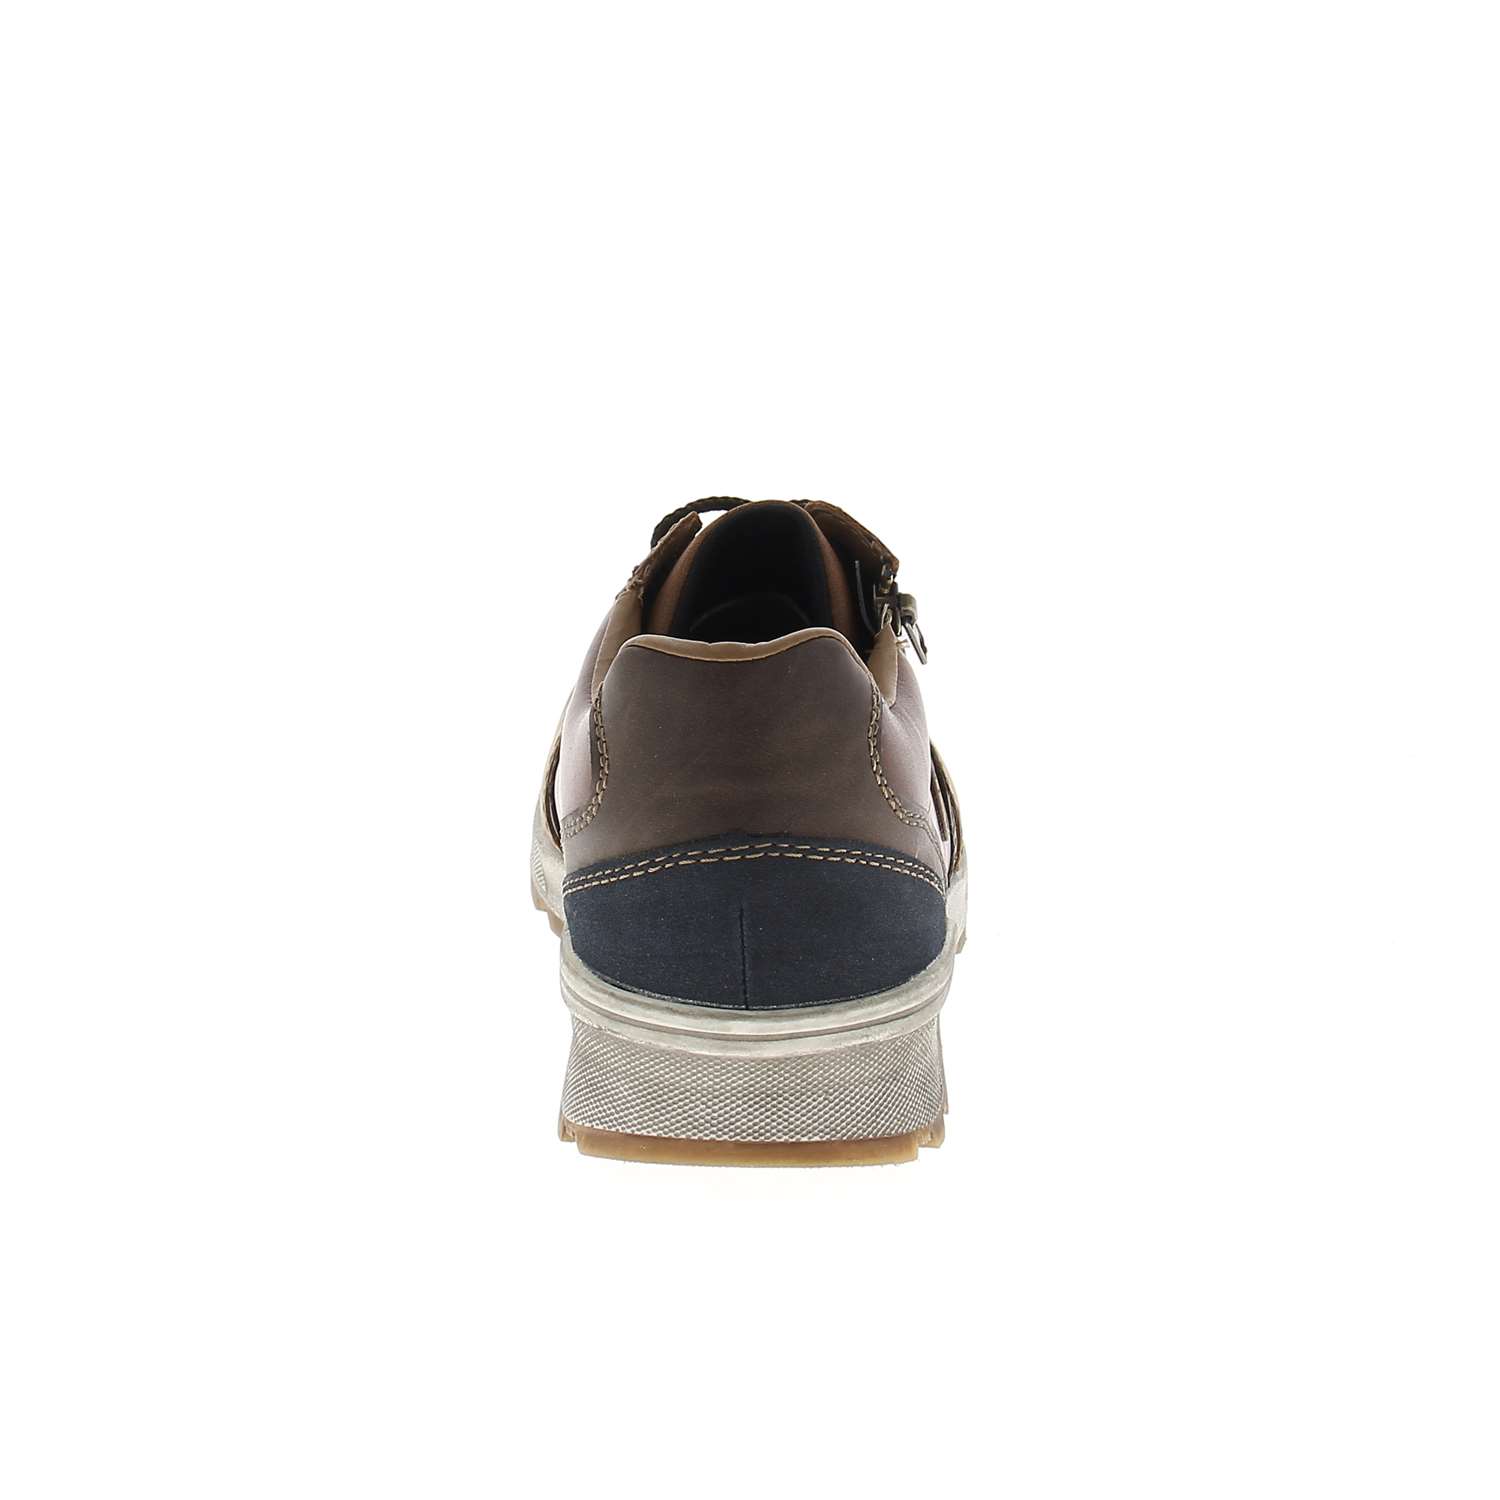 04 - RISURE - RIEKER - Chaussures à lacets - Cuir